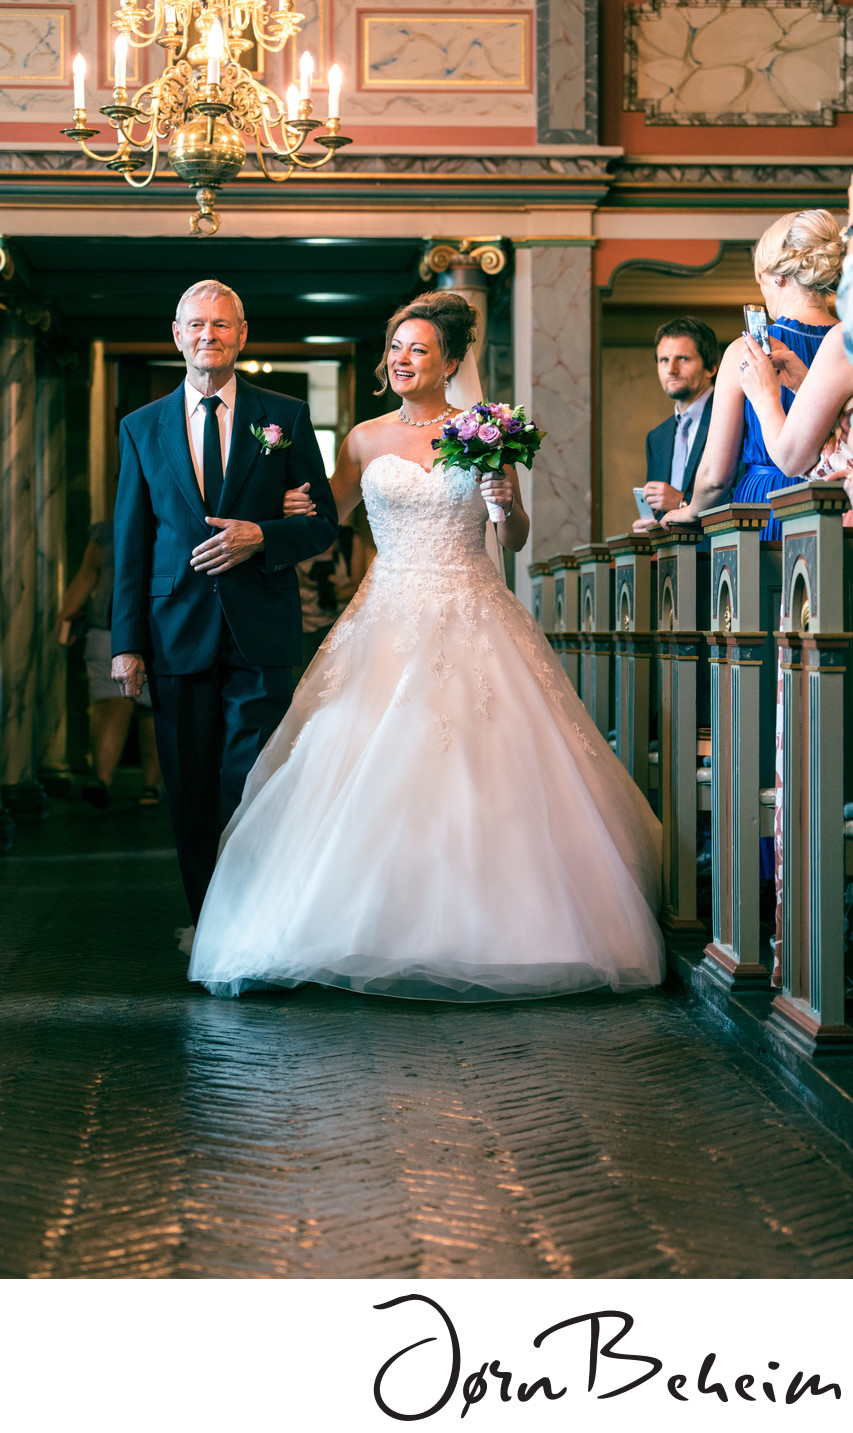 Fotograf i Borre kirke, se flere bilder fra bryllupet